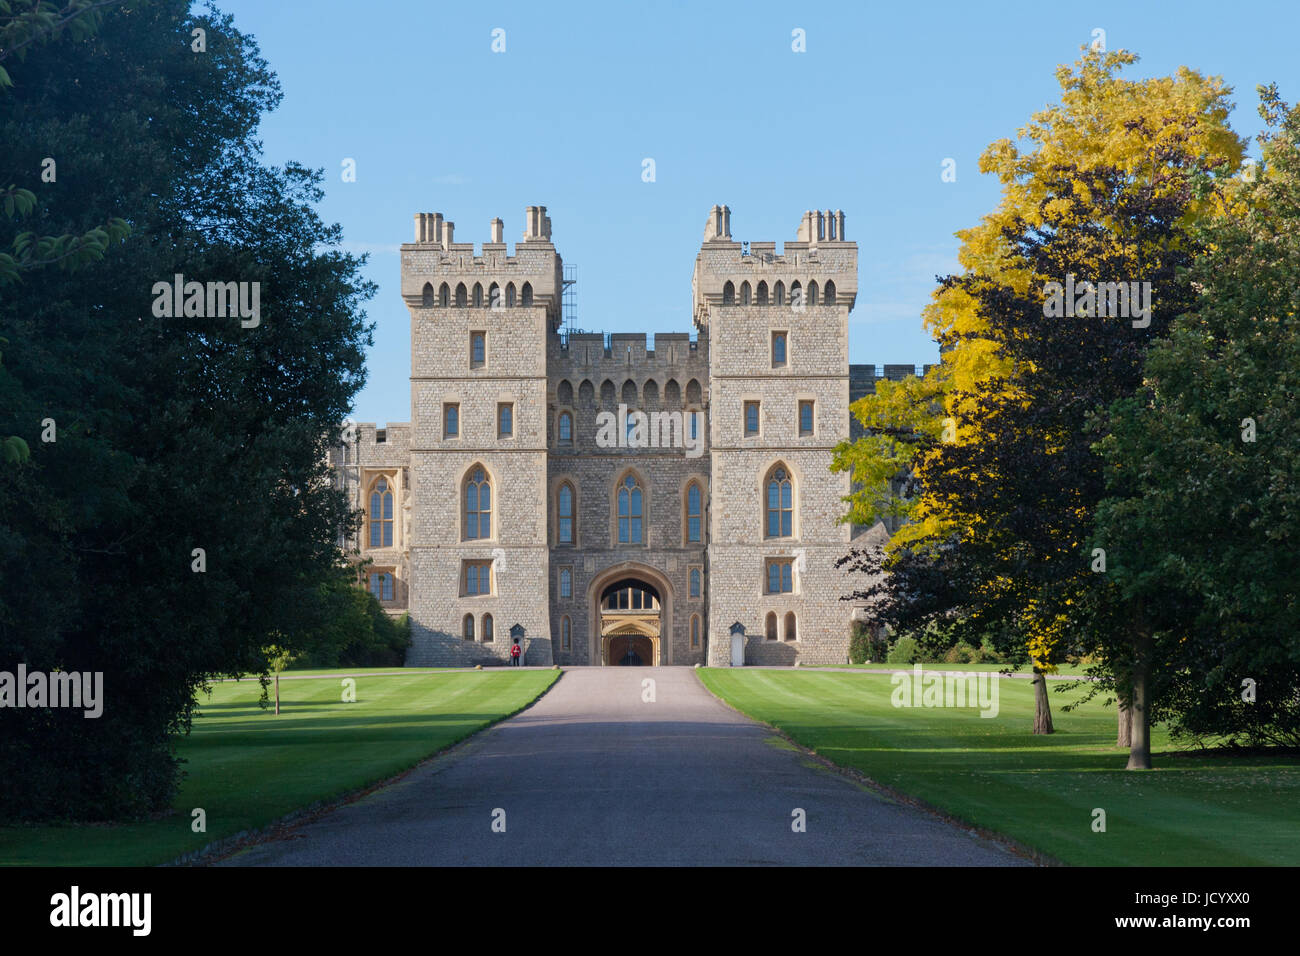 Entrée du château de Windsor, Windsor Great Park, Berkshire, Angleterre, Royaume-Uni Banque D'Images